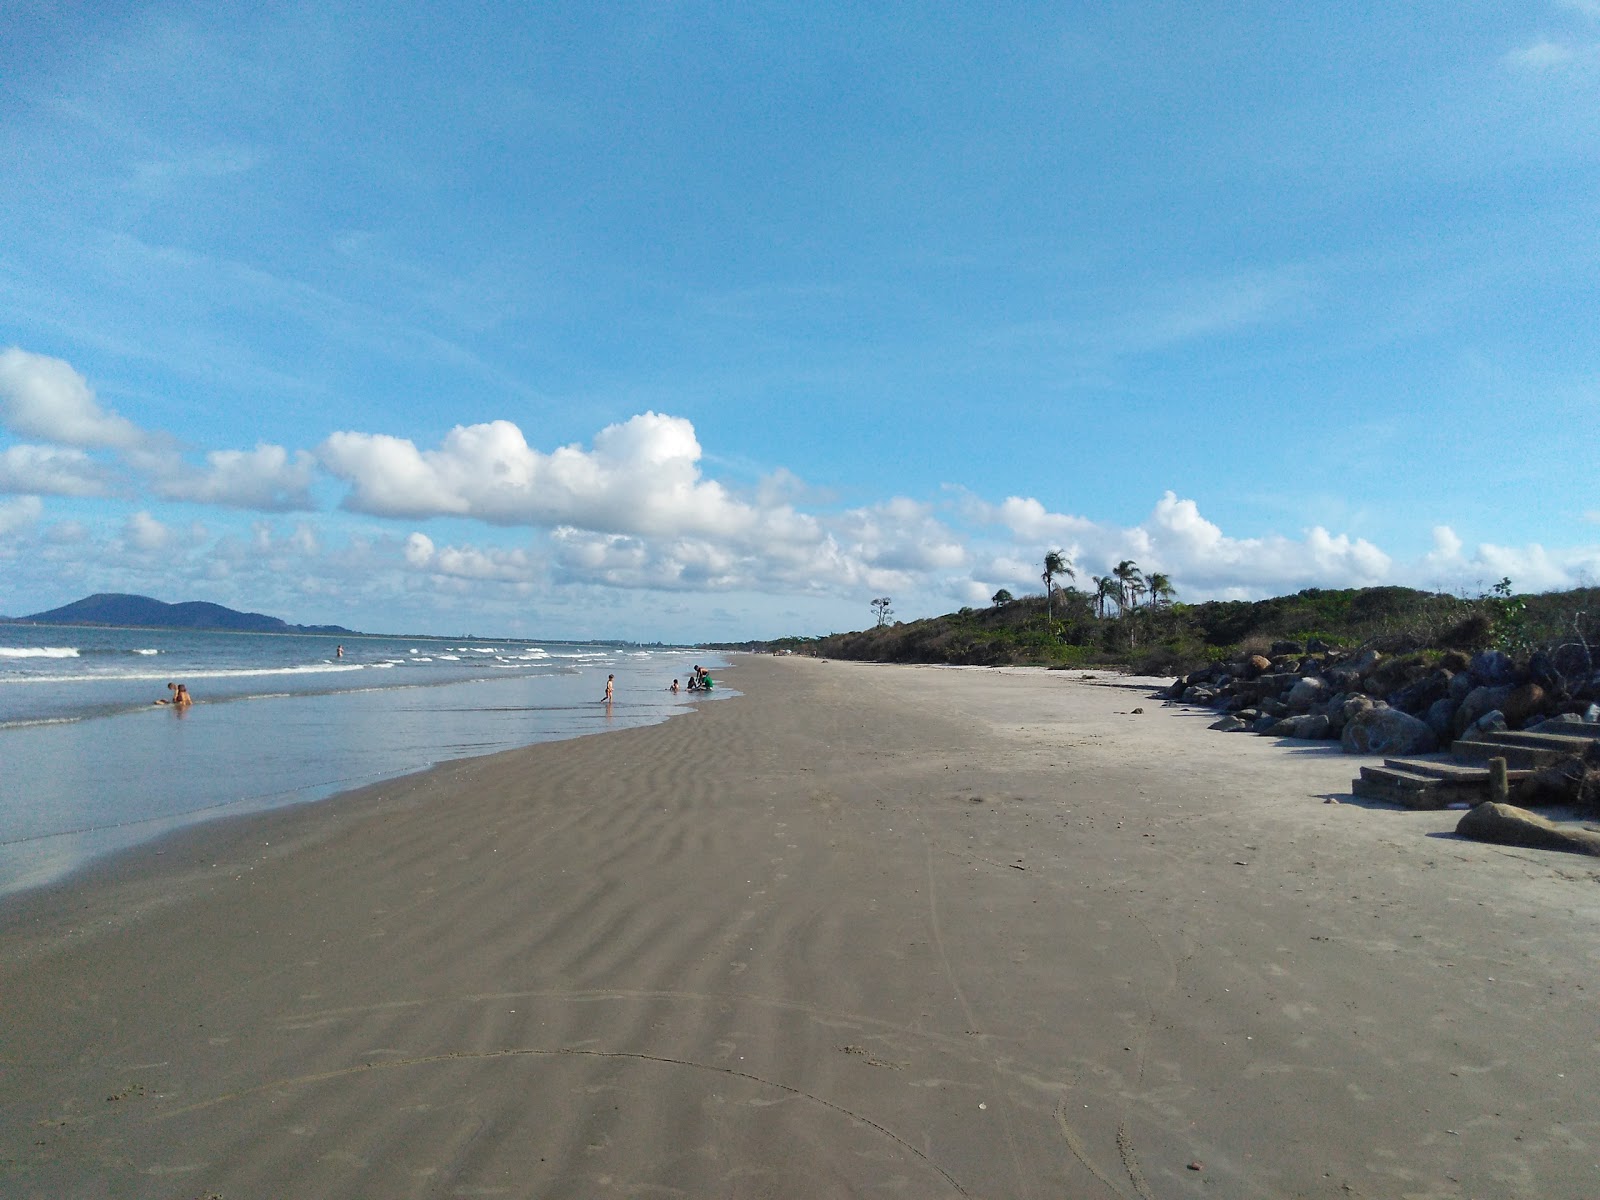 Fotografie cu Plaja Itapoá cu o suprafață de nisip fin strălucitor